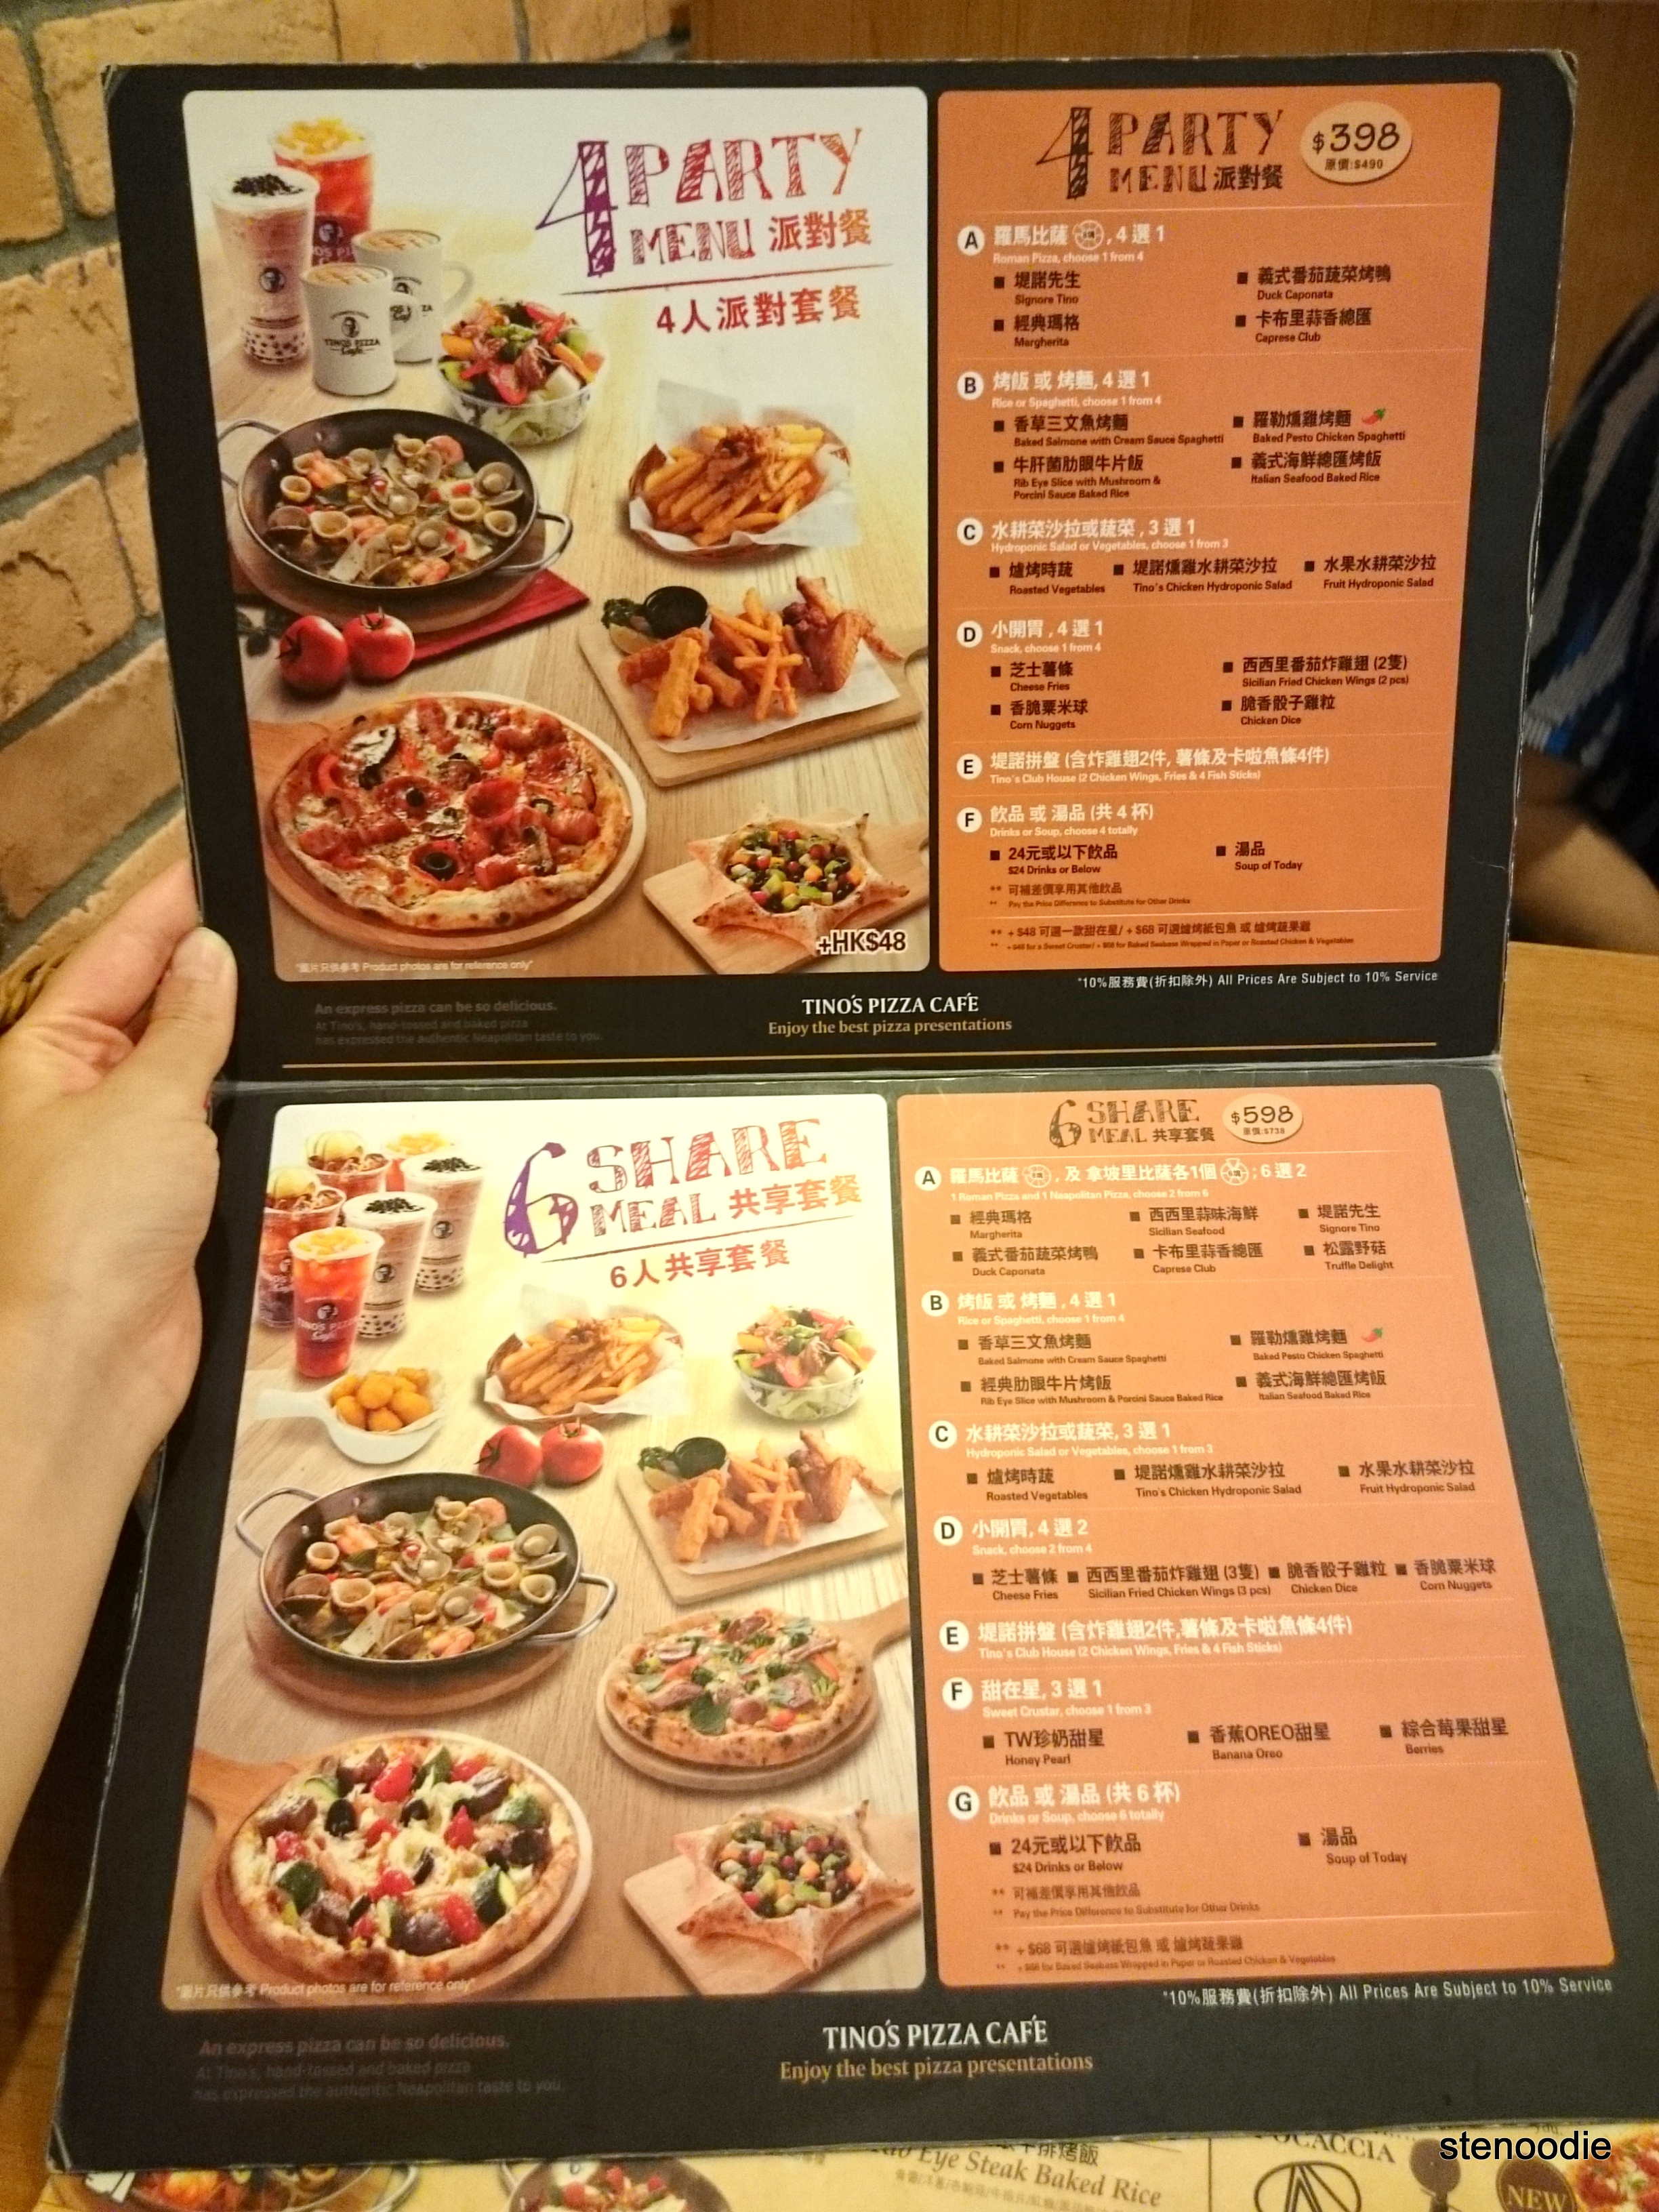 Tino's Pizza Café menu